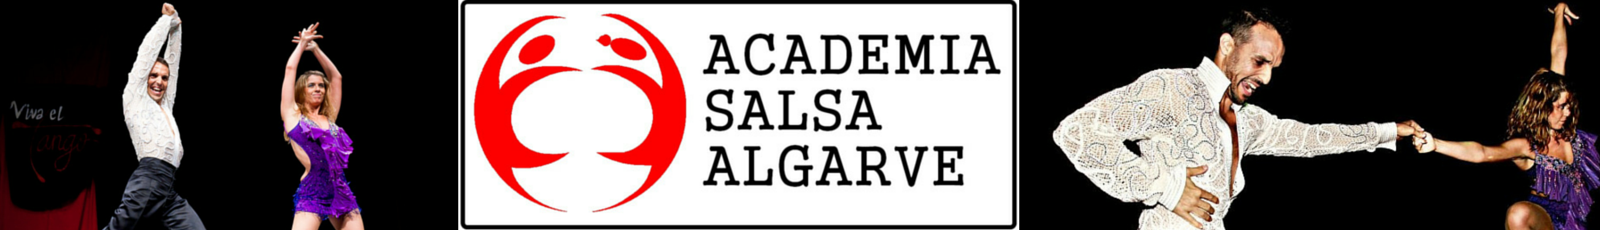 Academia de Salsa do Algarve